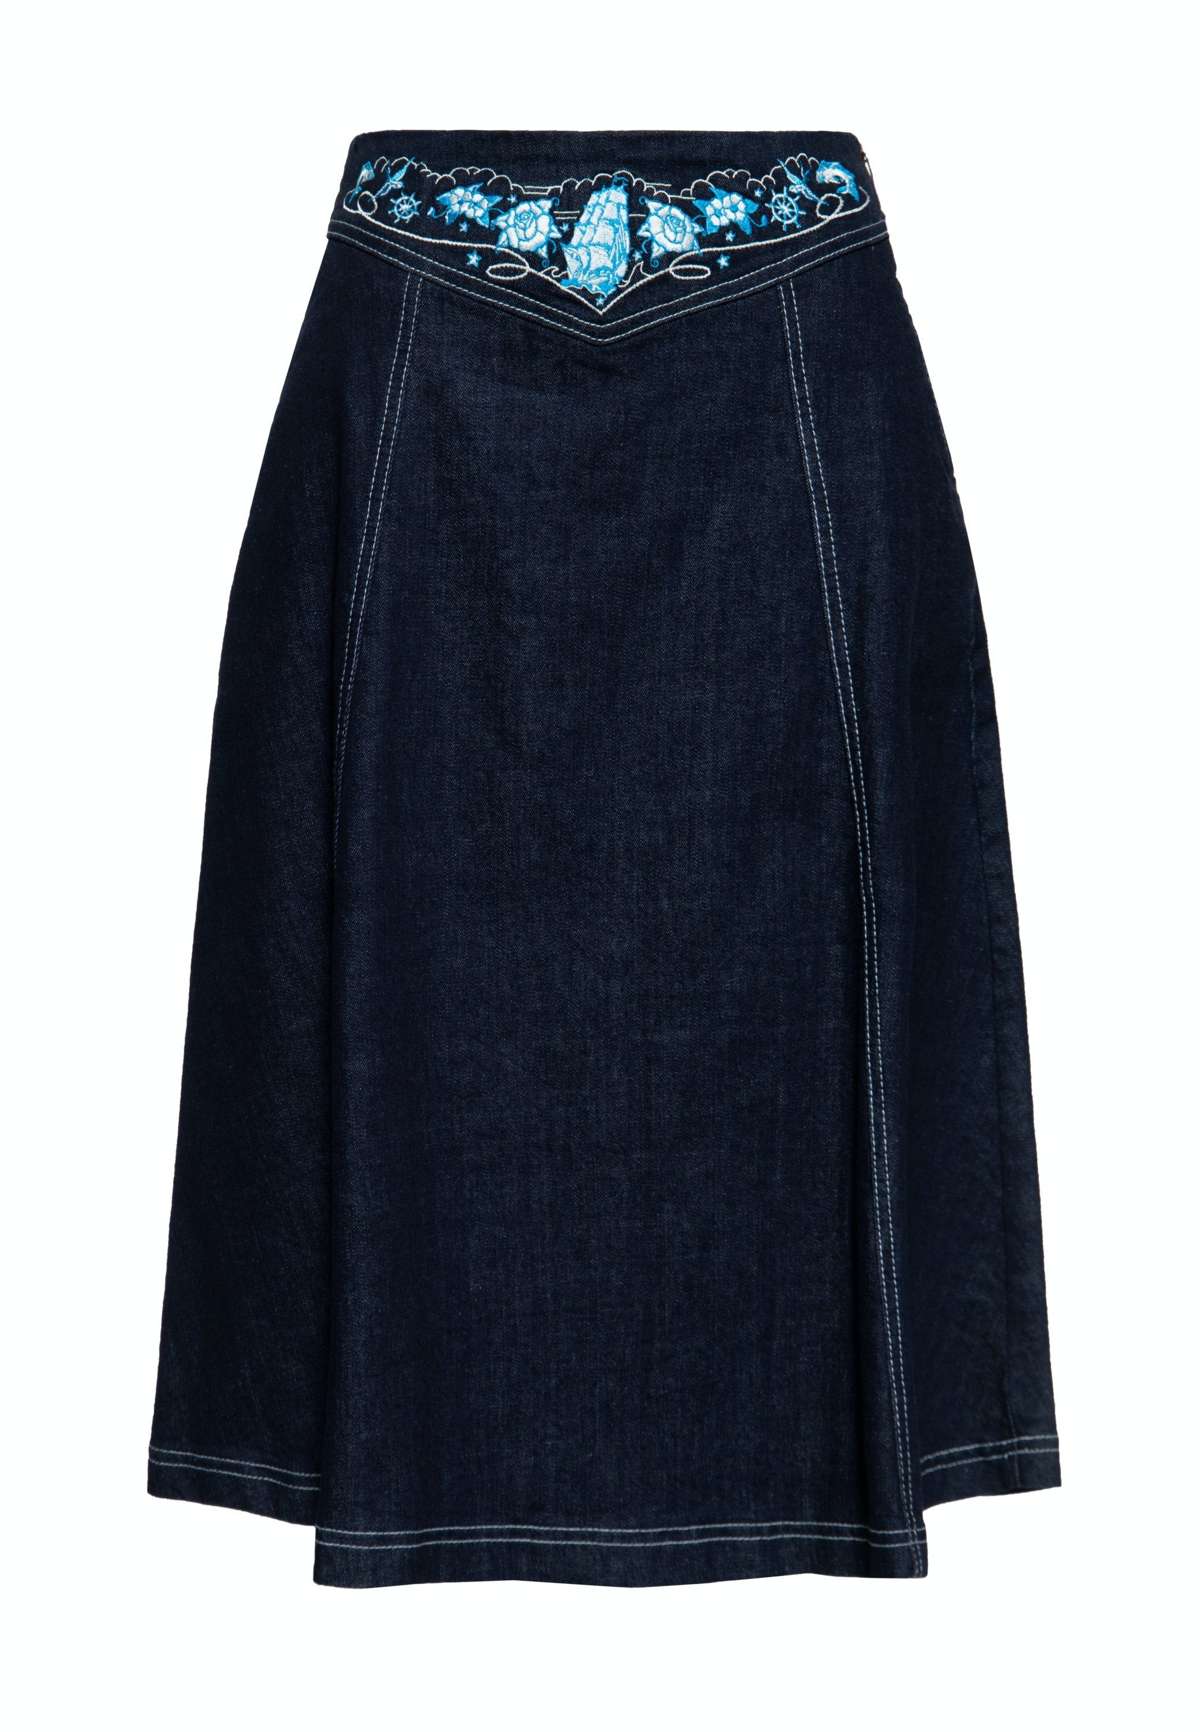 Джинсовая юбка с качественной контрастной вышивкой на поясе.